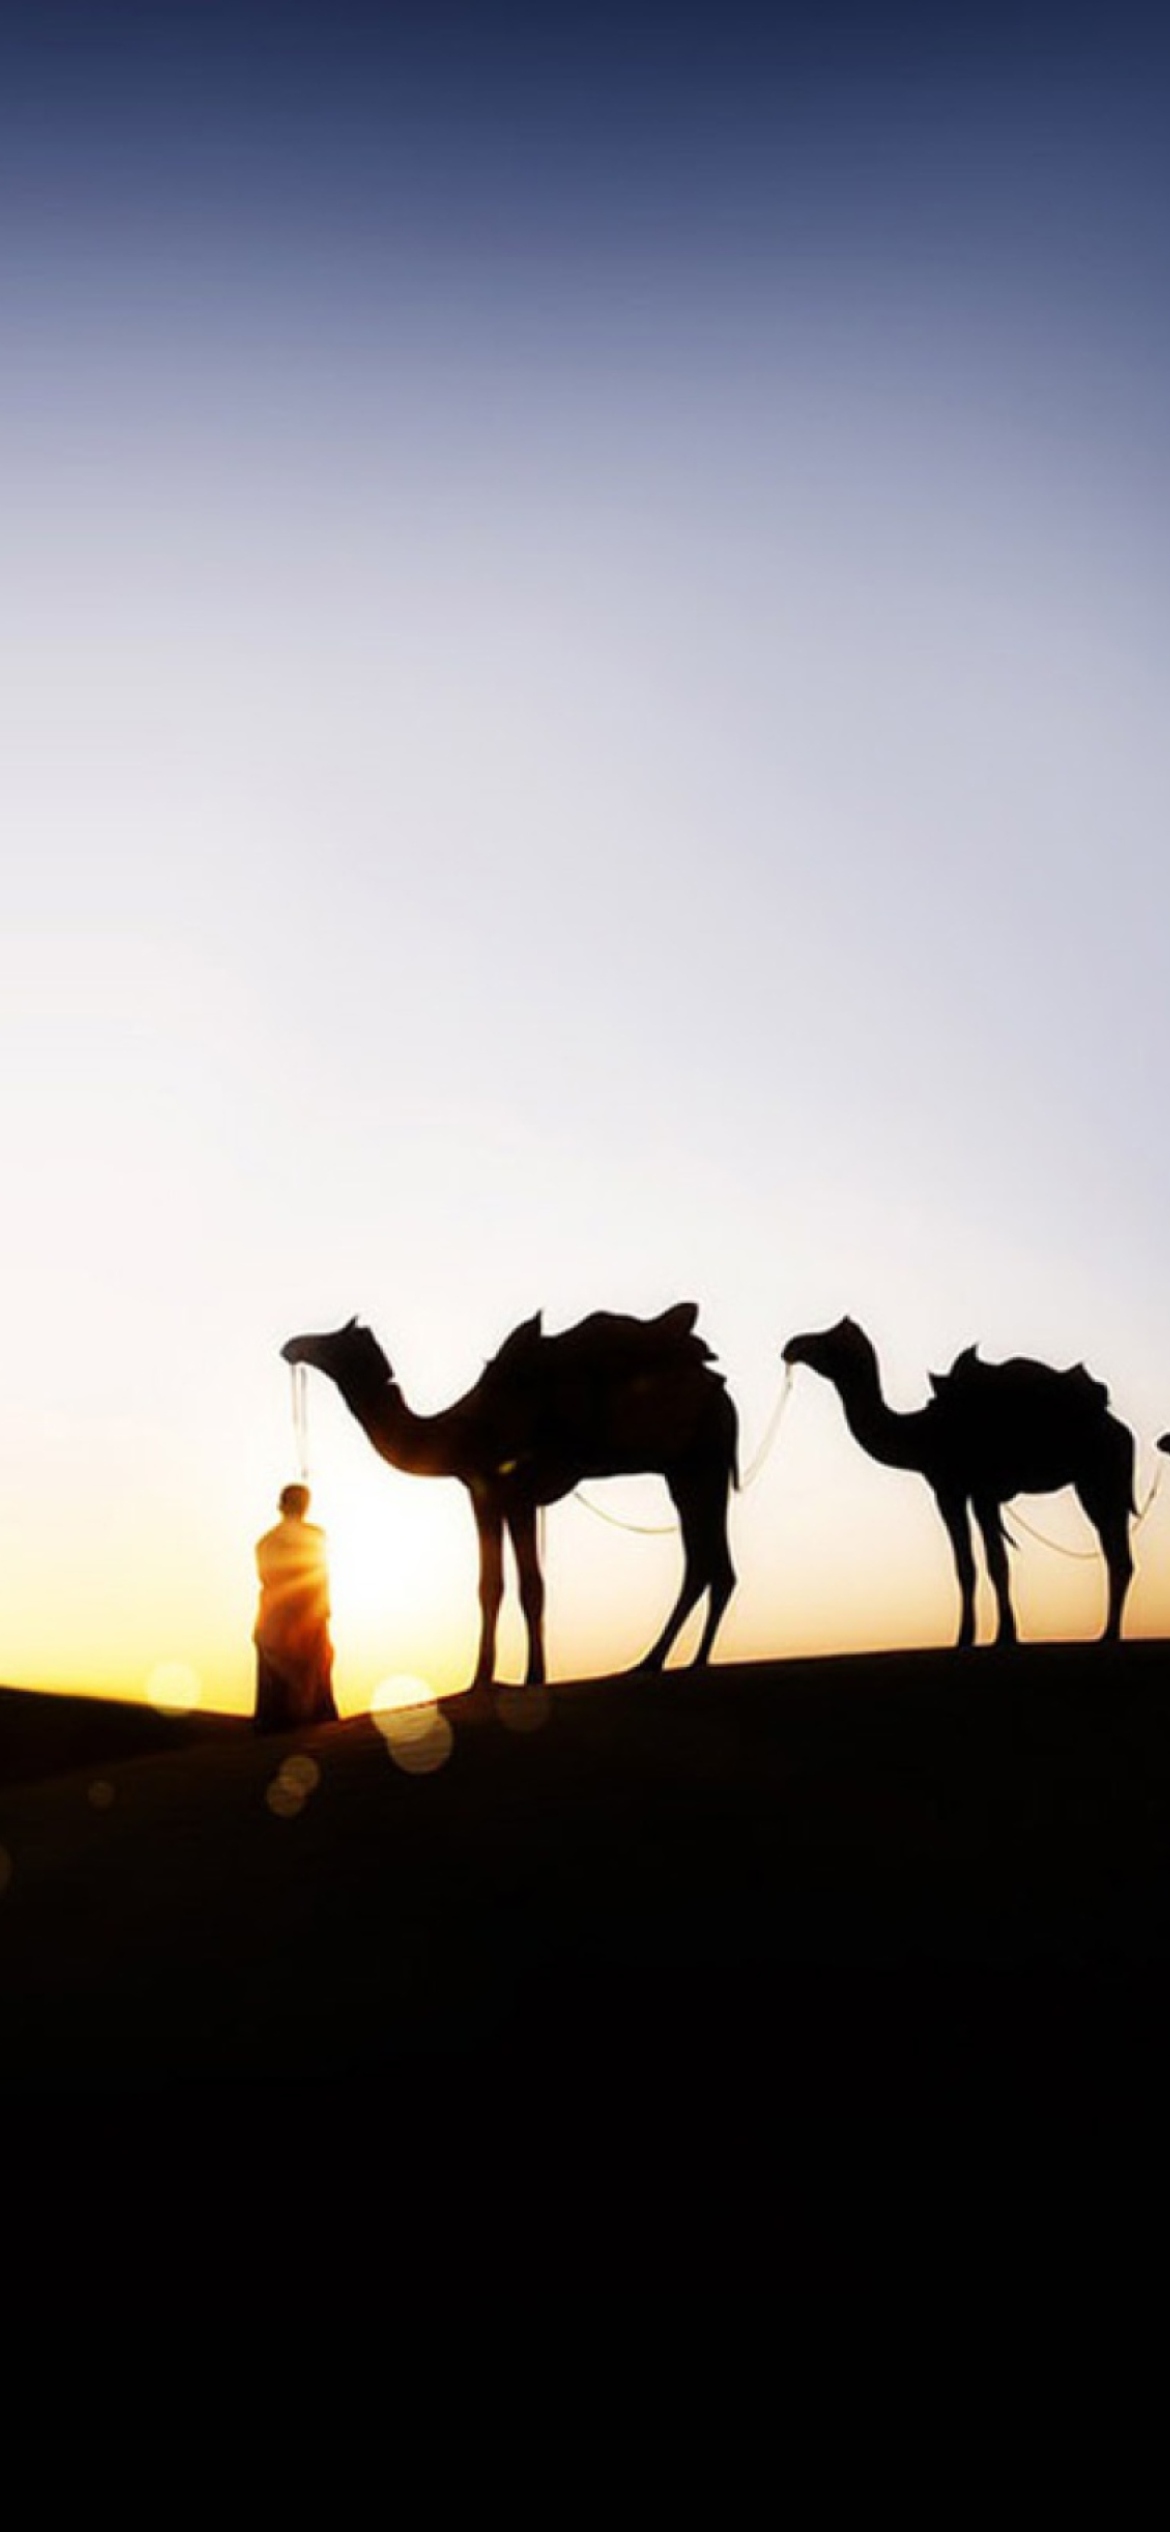 Обои Camel At Sunset 1170x2532